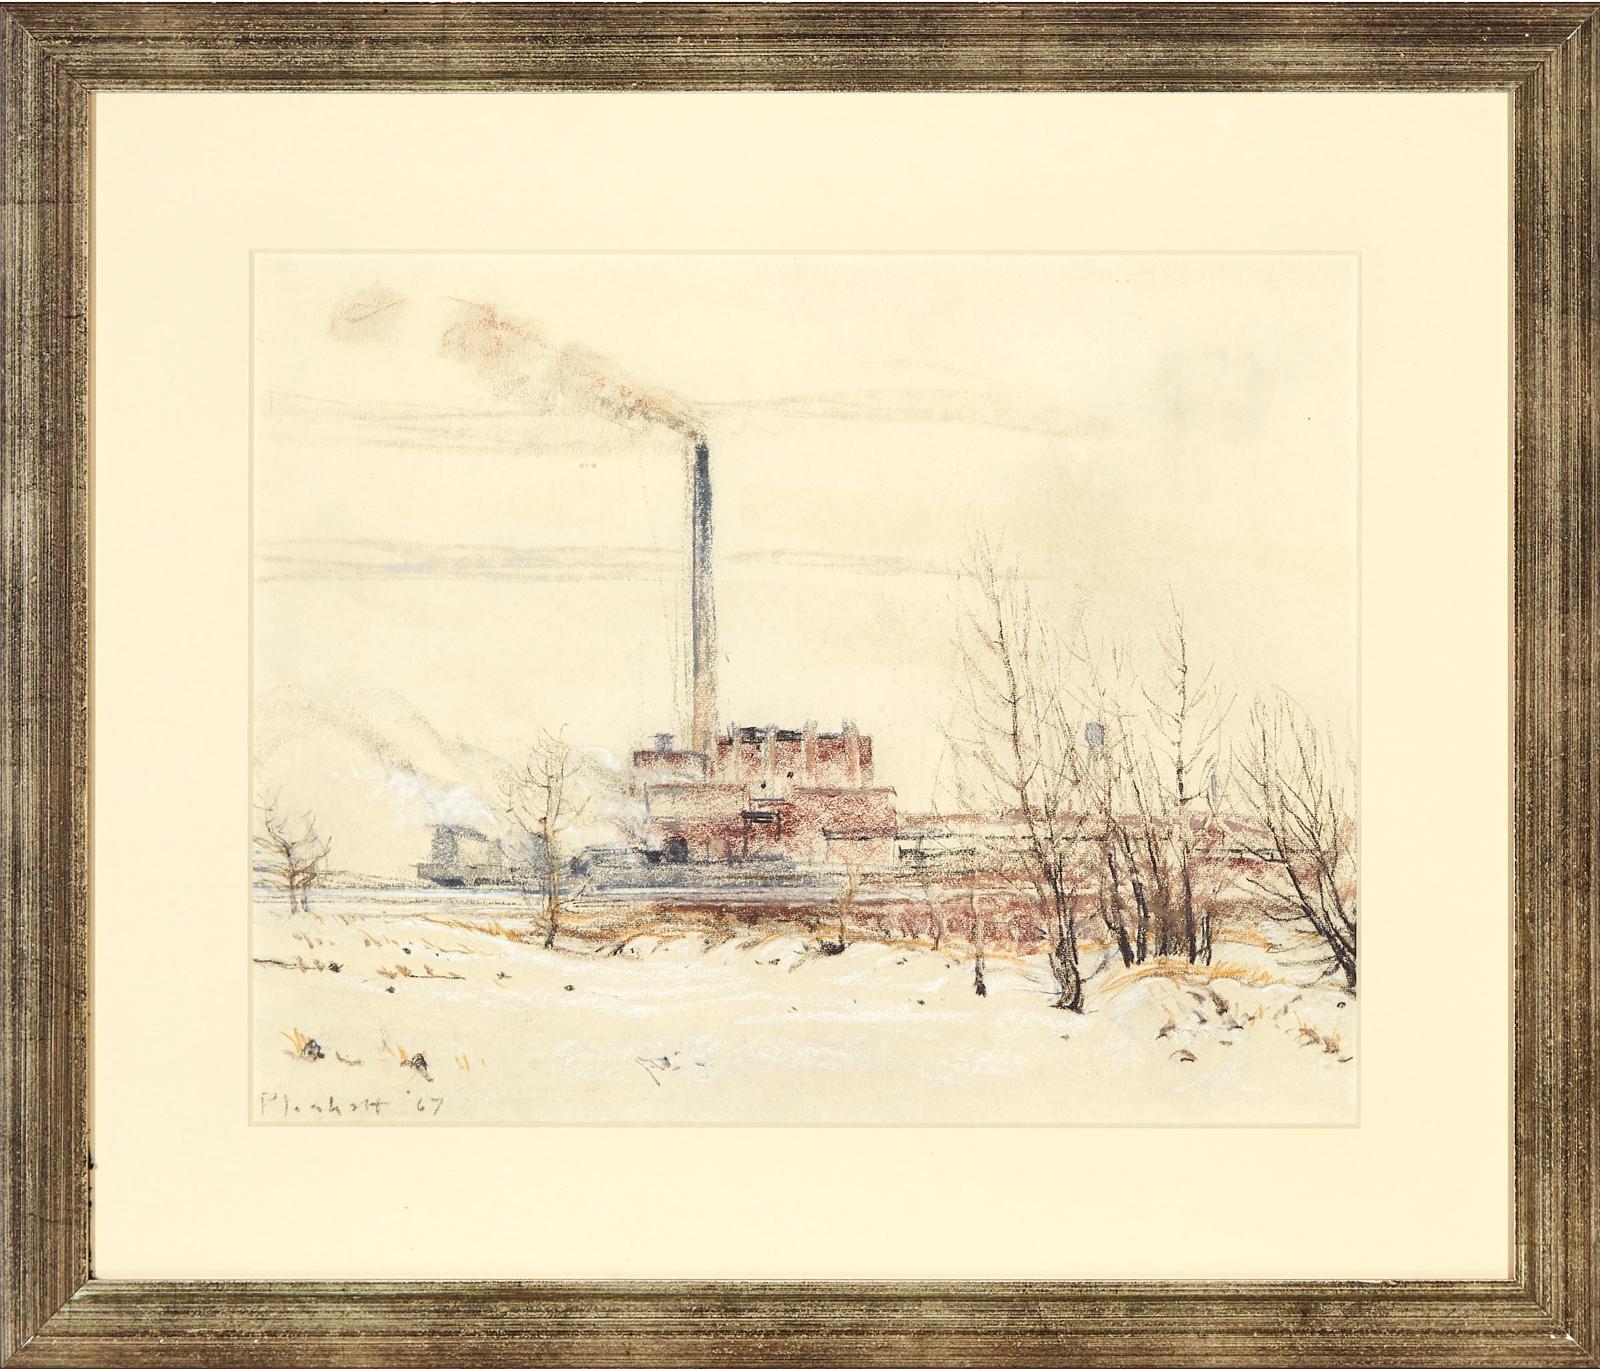 Joseph (Joe) Francis Plaskett (1918-2014) - Power Plant In Winter